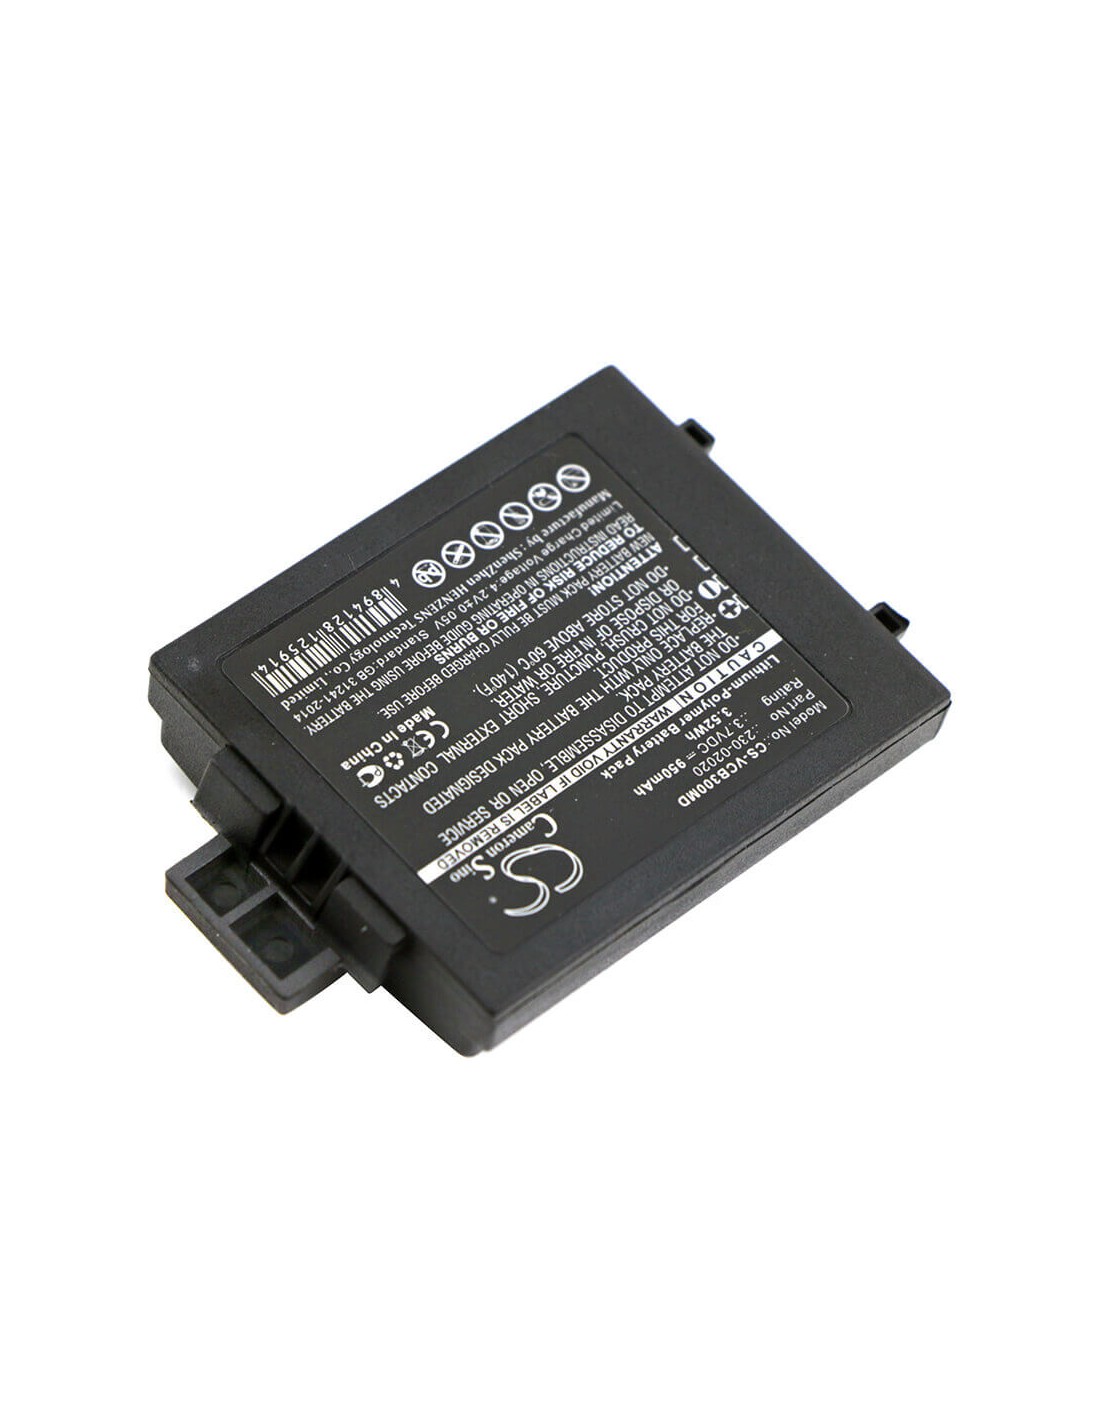 Battery for Vocera, B3000e, B3000n, Communications Badge B3000 3.7V, 950mAh - 3.52Wh